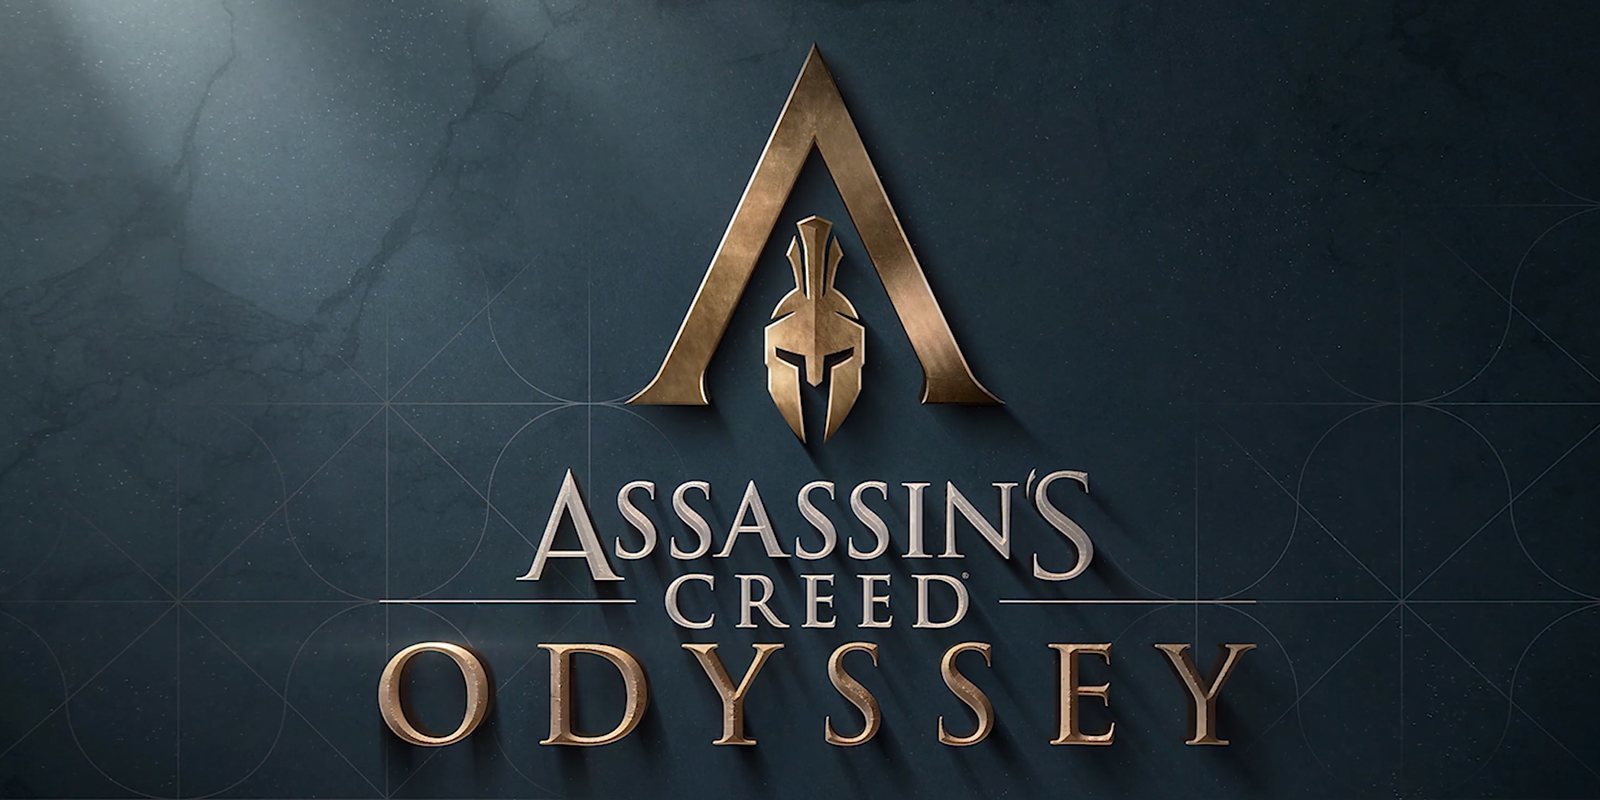 'Assassins Creed Odyssey': esperanzas y miedos